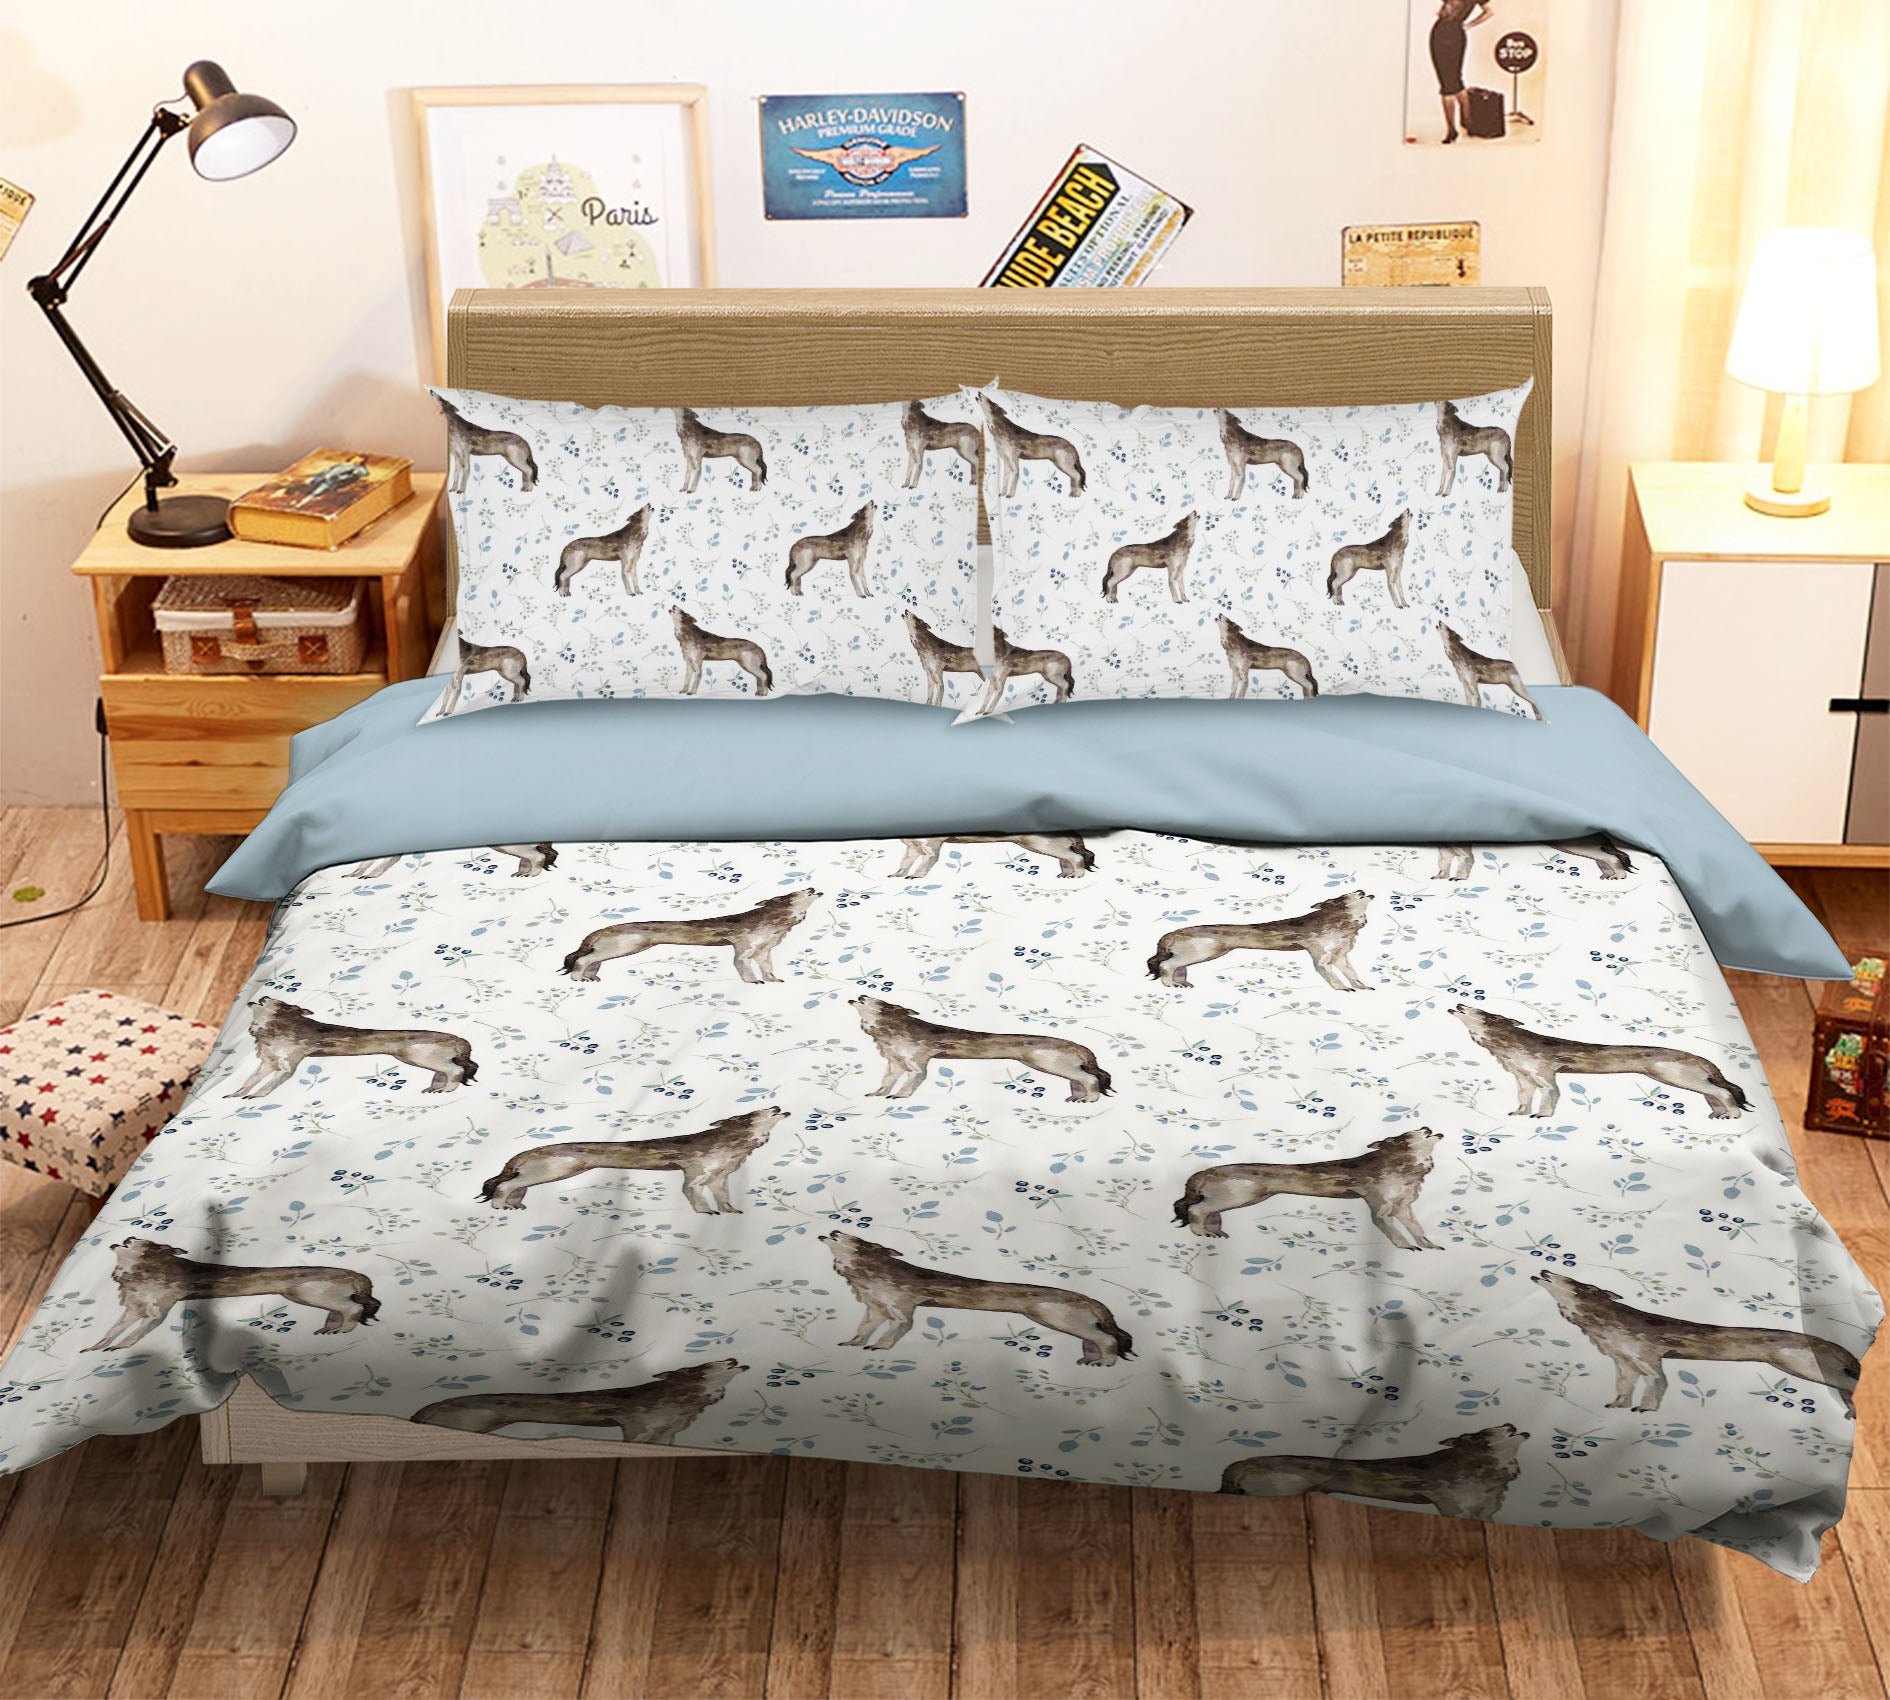 3D Wolf Pattern 193 Uta Naumann Bedding Bed Pillowcases Quilt